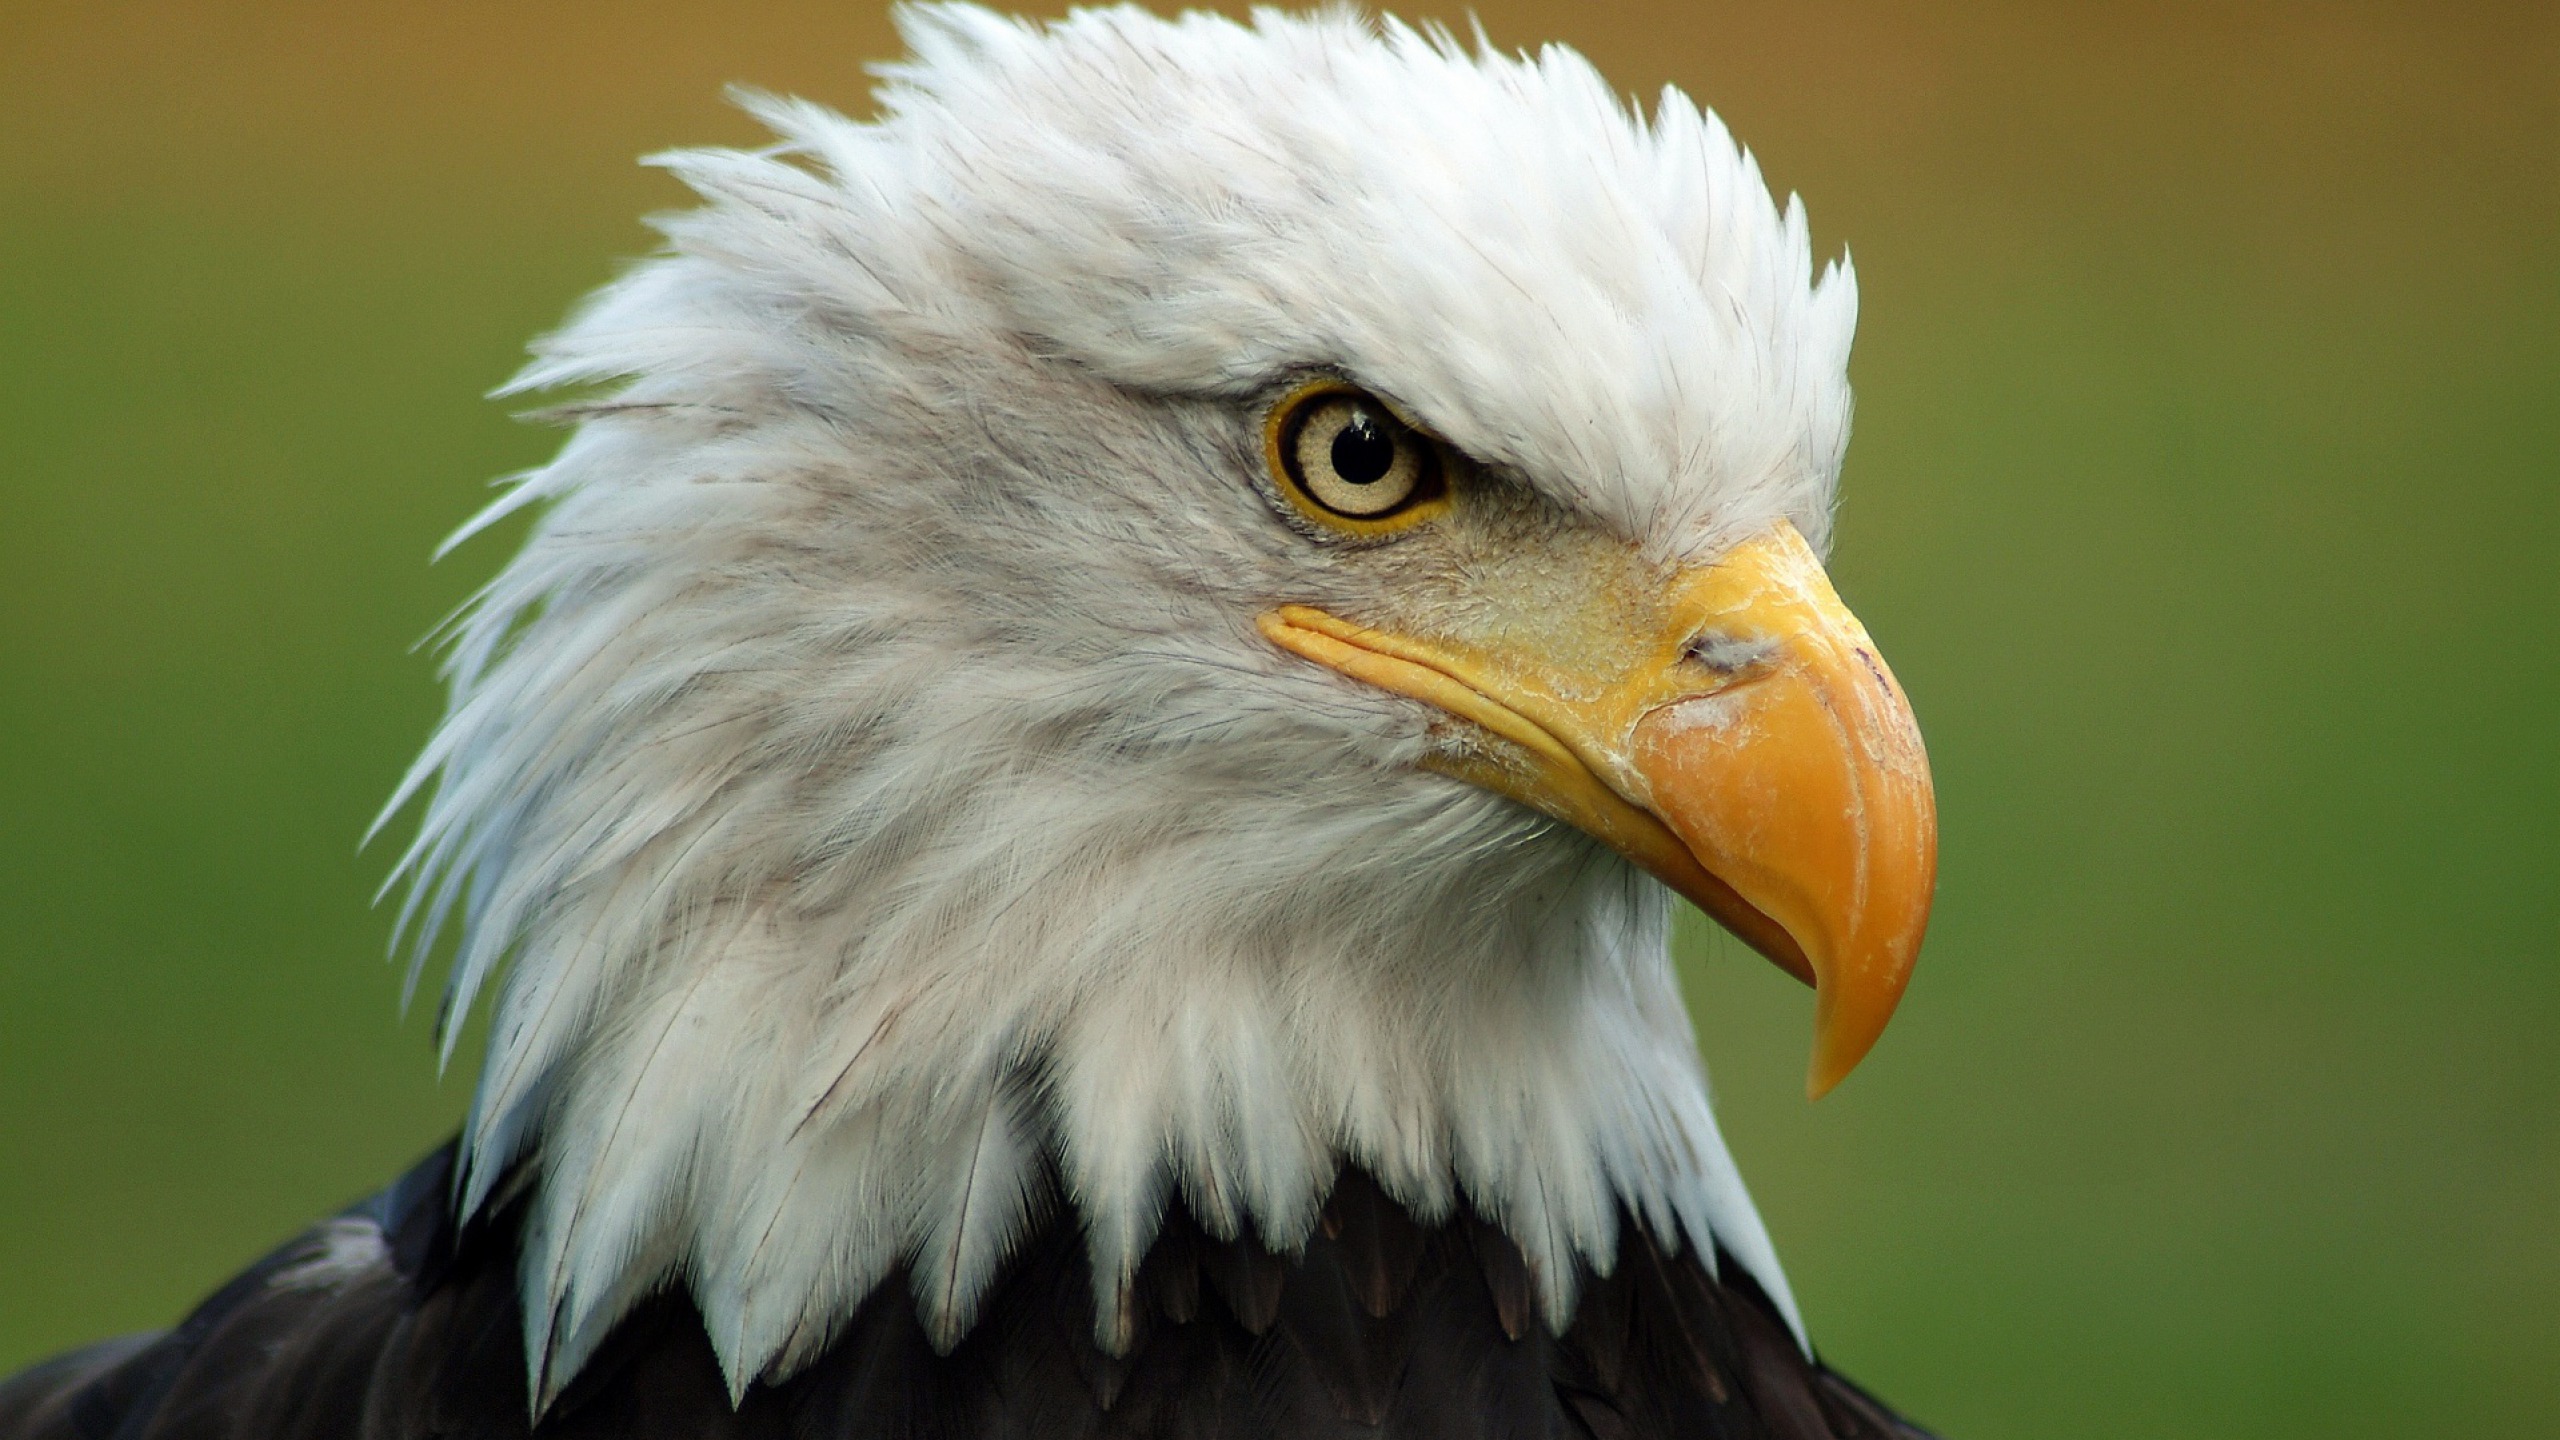 Fondos de Pantalla Cabeza de Águila Blanca y Negra, Imágenes y Fotos Gratis